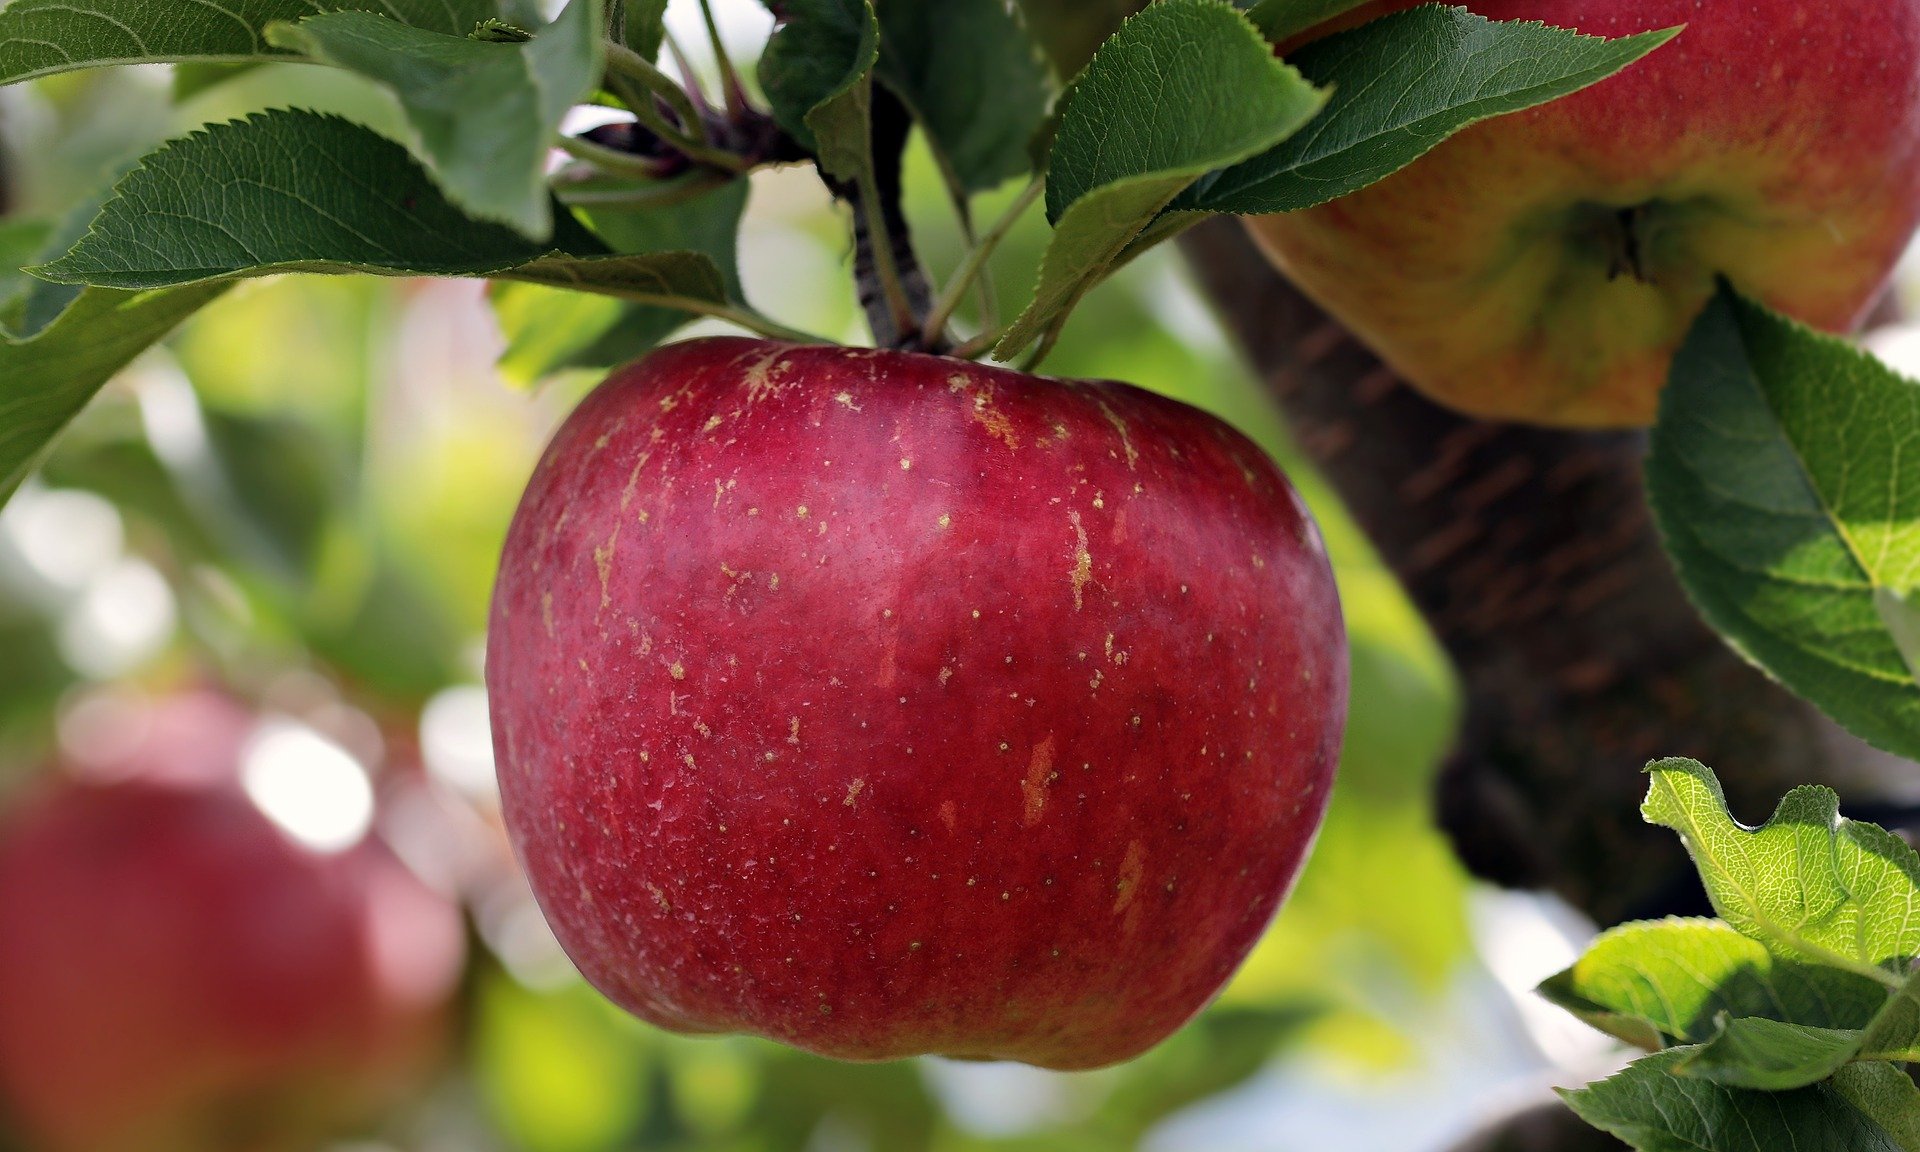 Apple fruit on tree